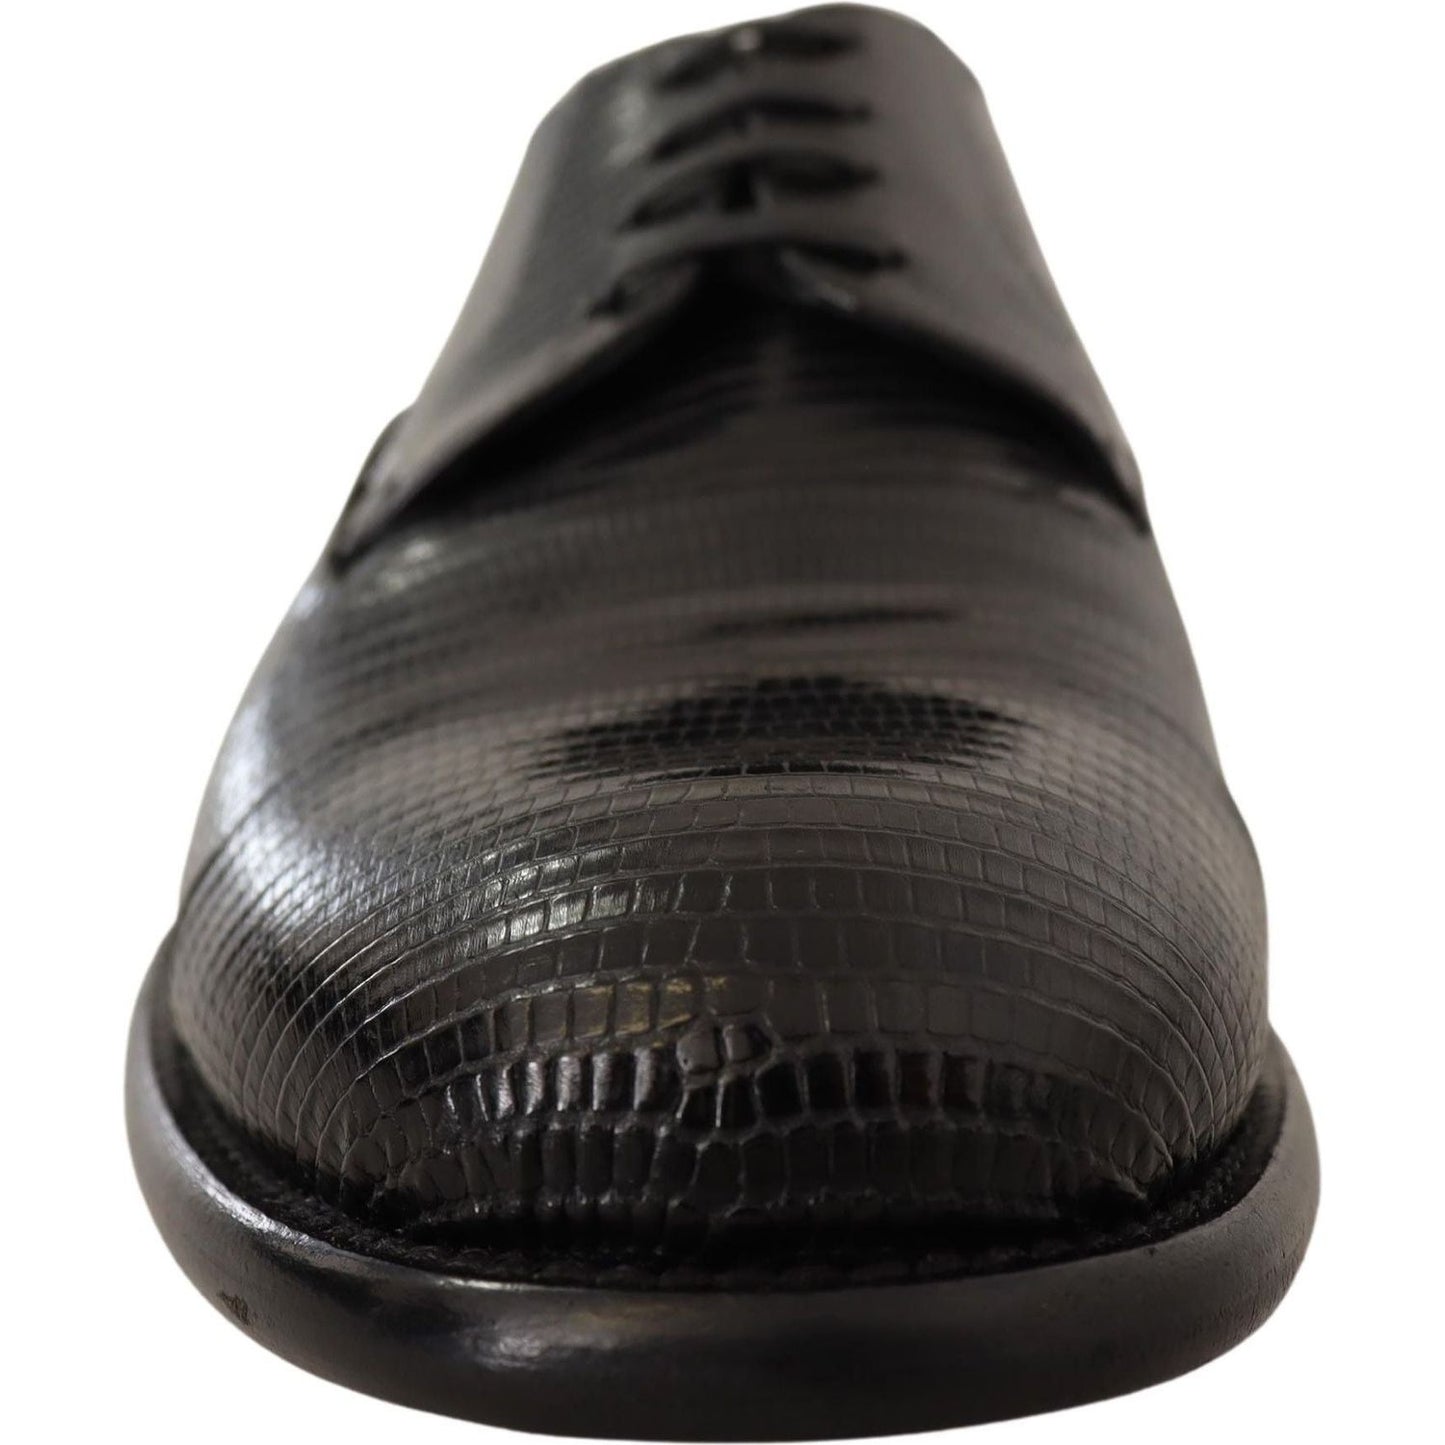 Dolce & Gabbana Elegant Black Lizard Skin Derby Shoes black-lizard-leather-derby-dress-shoes Dress Shoes IMG_9234-dddad37f-bea.jpg